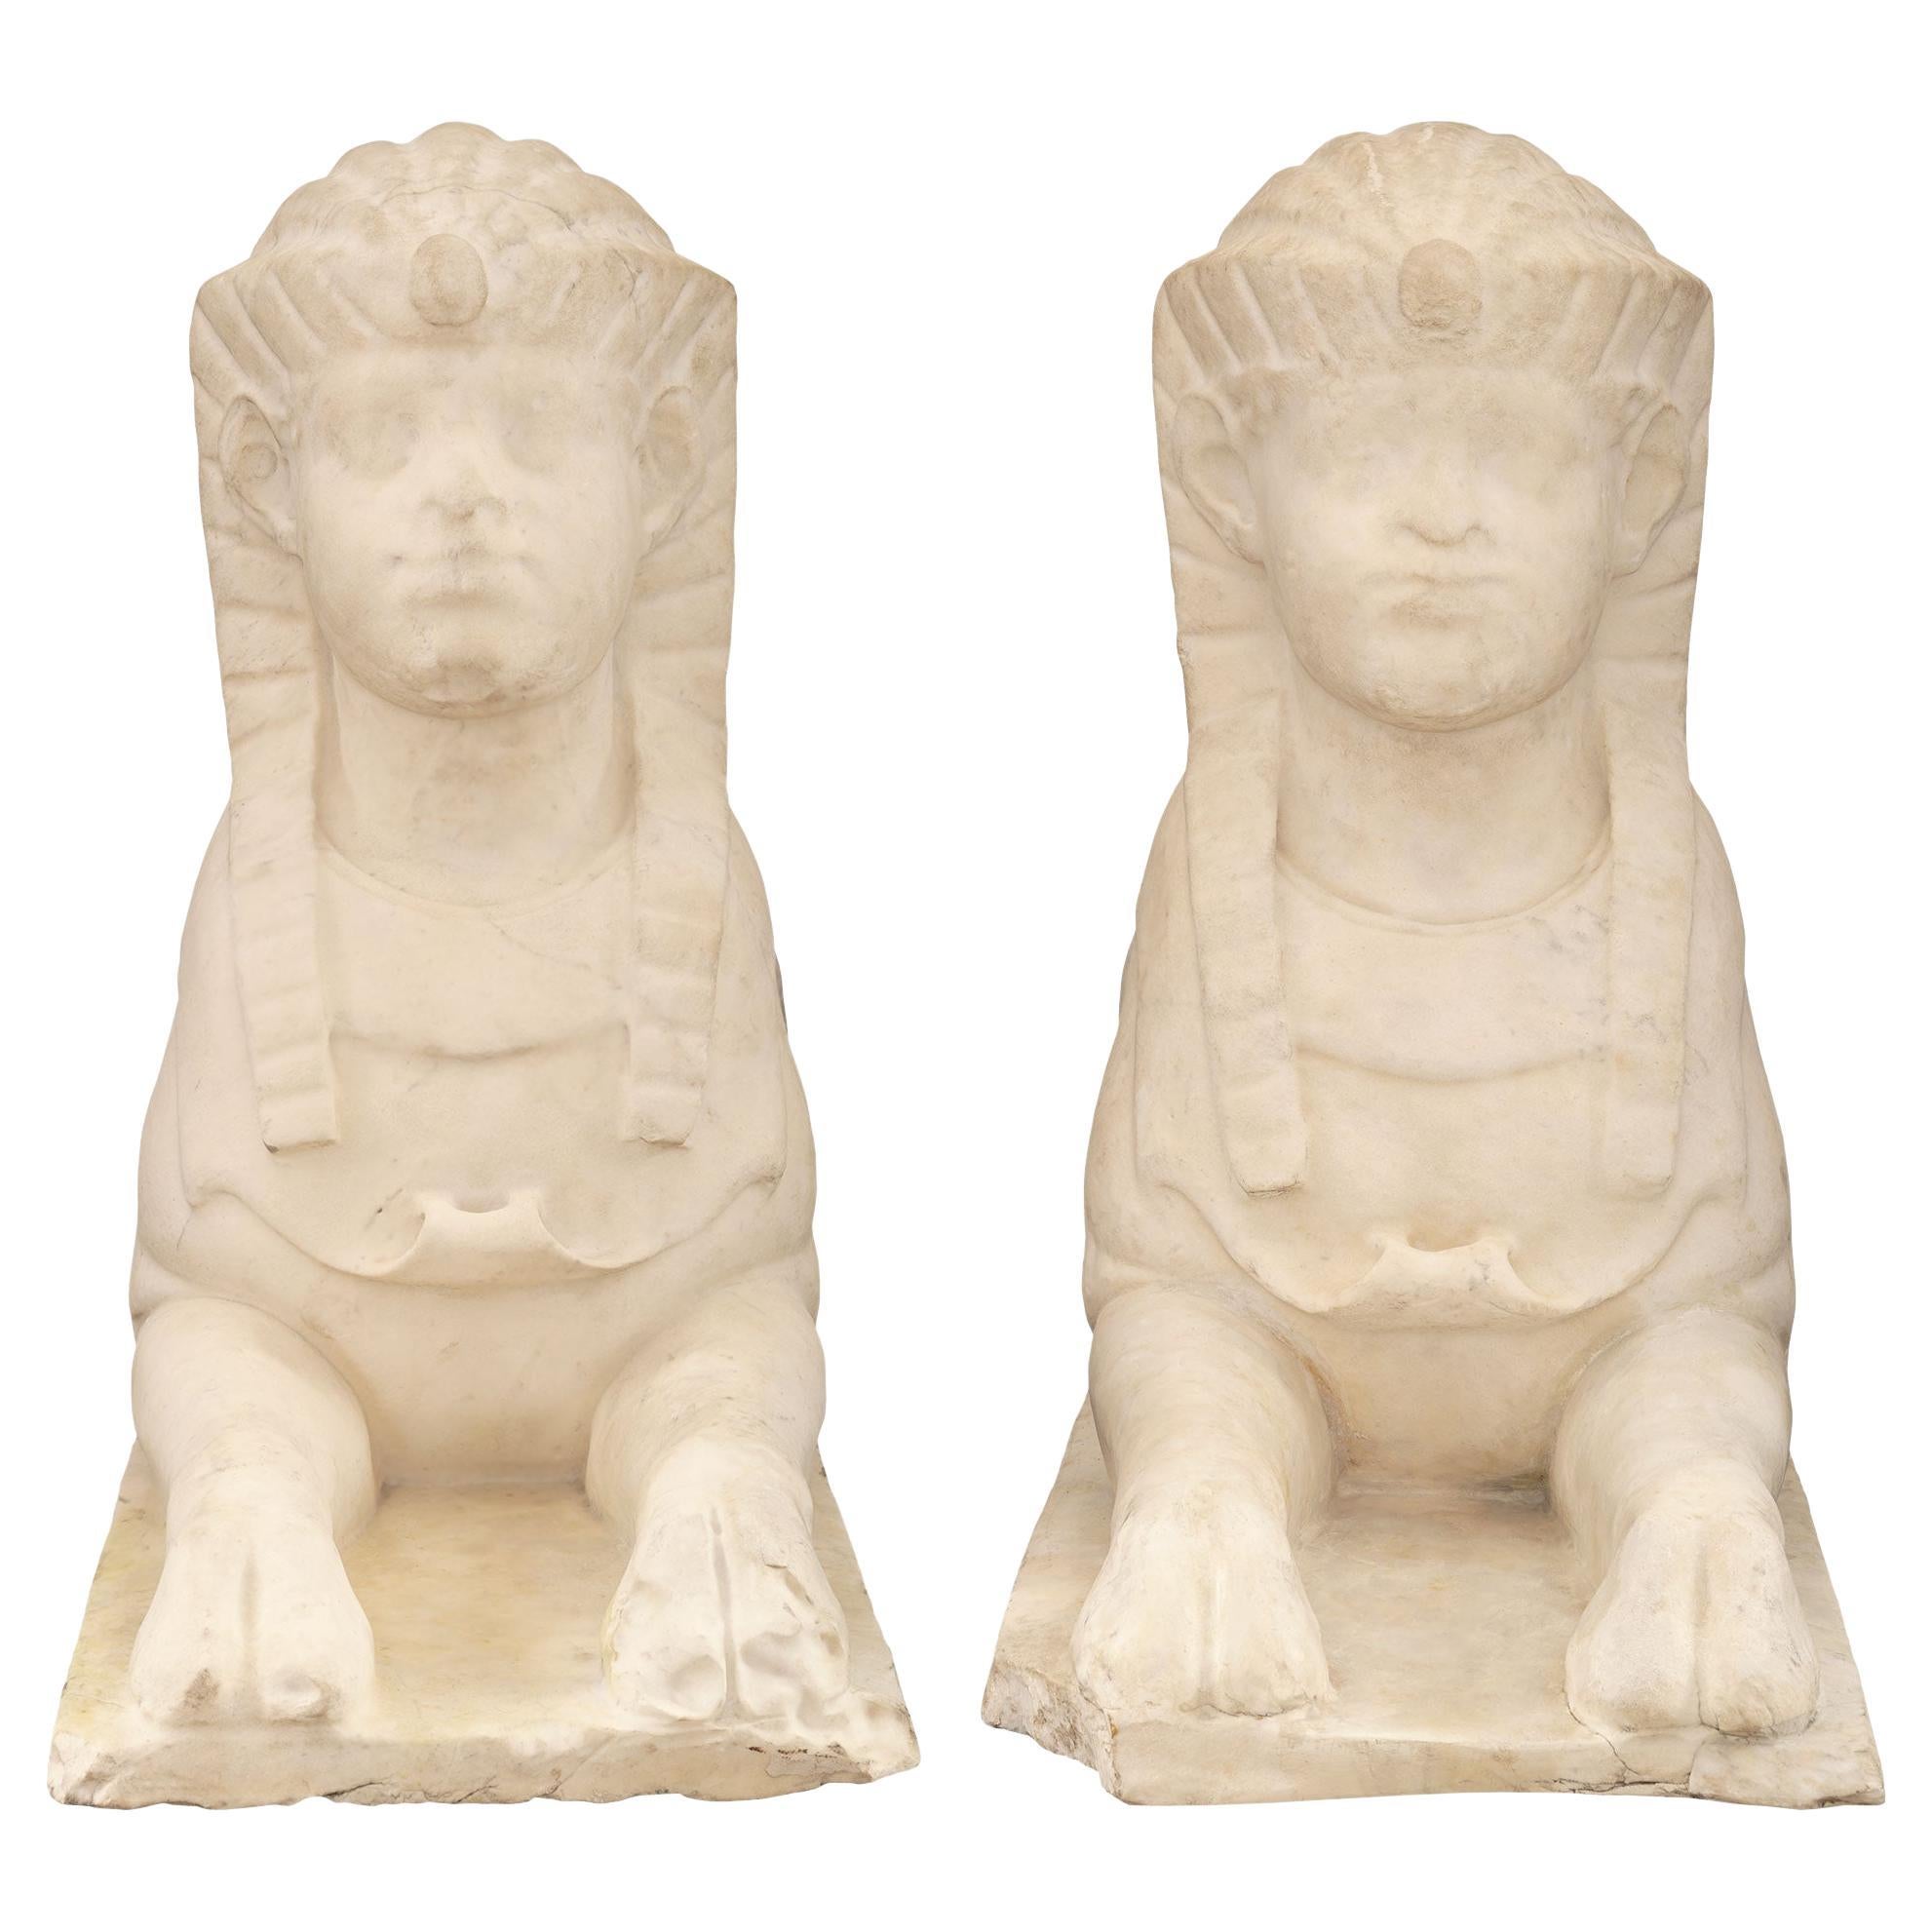 Ein beeindruckendes Paar italienischer neoklassischer Statuen aus weißem Carrara-Marmor aus dem 19. Jahrhundert, die ägyptische Sphingen darstellen. Jede Sphinx ist aus einem einzigen Stück Marmor gemeißelt und wird von einem rechteckigen Sockel